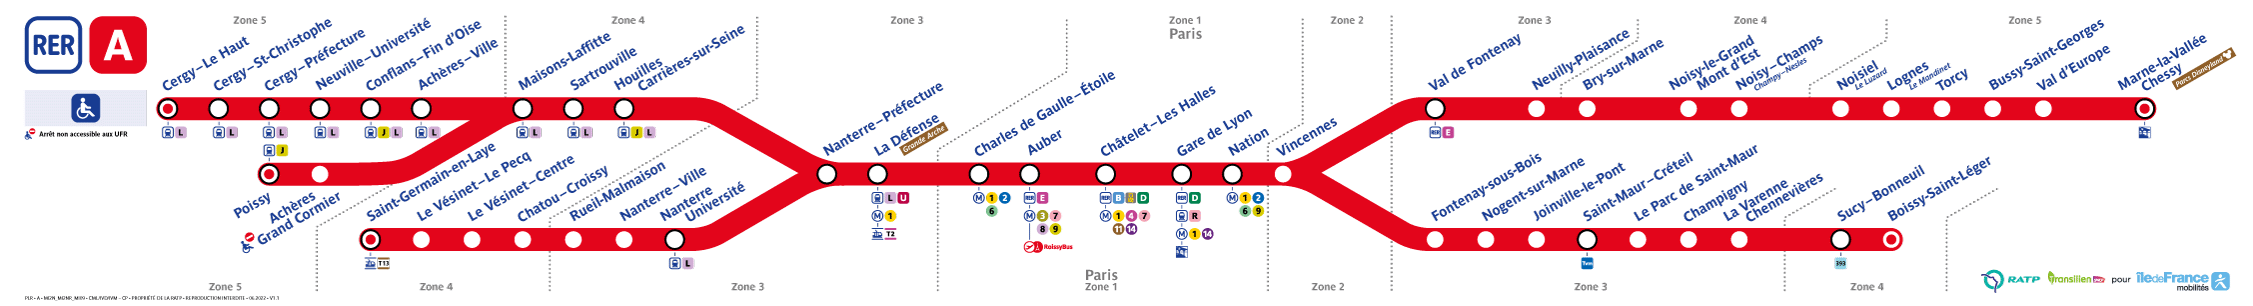 되도록이면 저 가운데 Nanterre-Préfecture - Vincennes 구간을 노리자. 어떤 방향 열차가 오든 저 가운데 정차역들은 필연적으로 지나게 되어 있다 = 승강장에서 